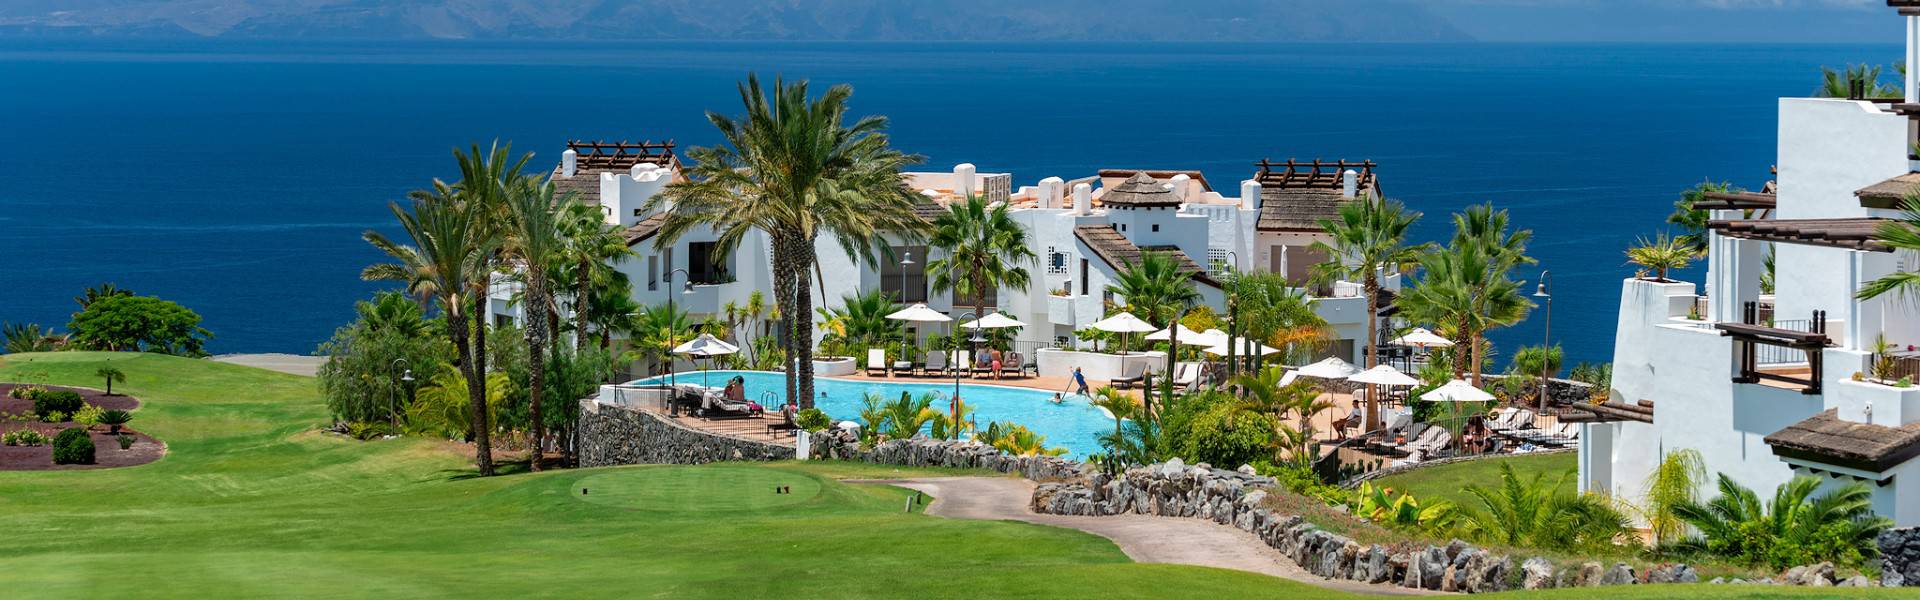 Abama Resort Tenerife 5* Abama Hotels